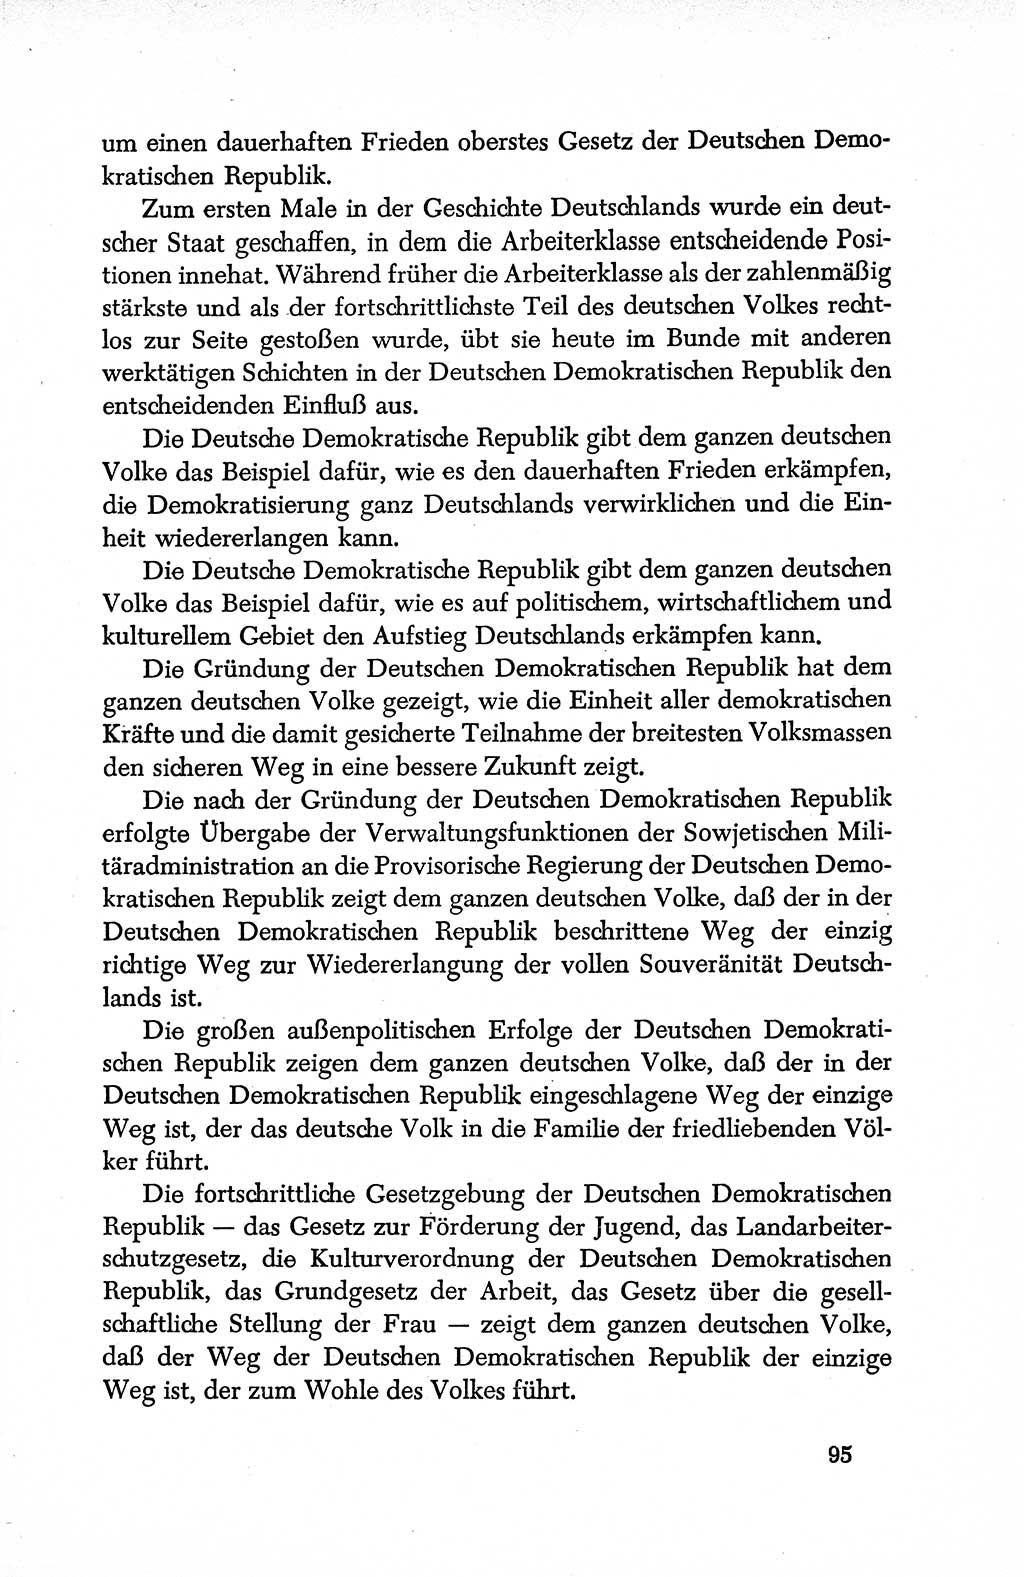 Dokumente der Sozialistischen Einheitspartei Deutschlands (SED) [Deutsche Demokratische Republik (DDR)] 1950-1952, Seite 95 (Dok. SED DDR 1950-1952, S. 95)